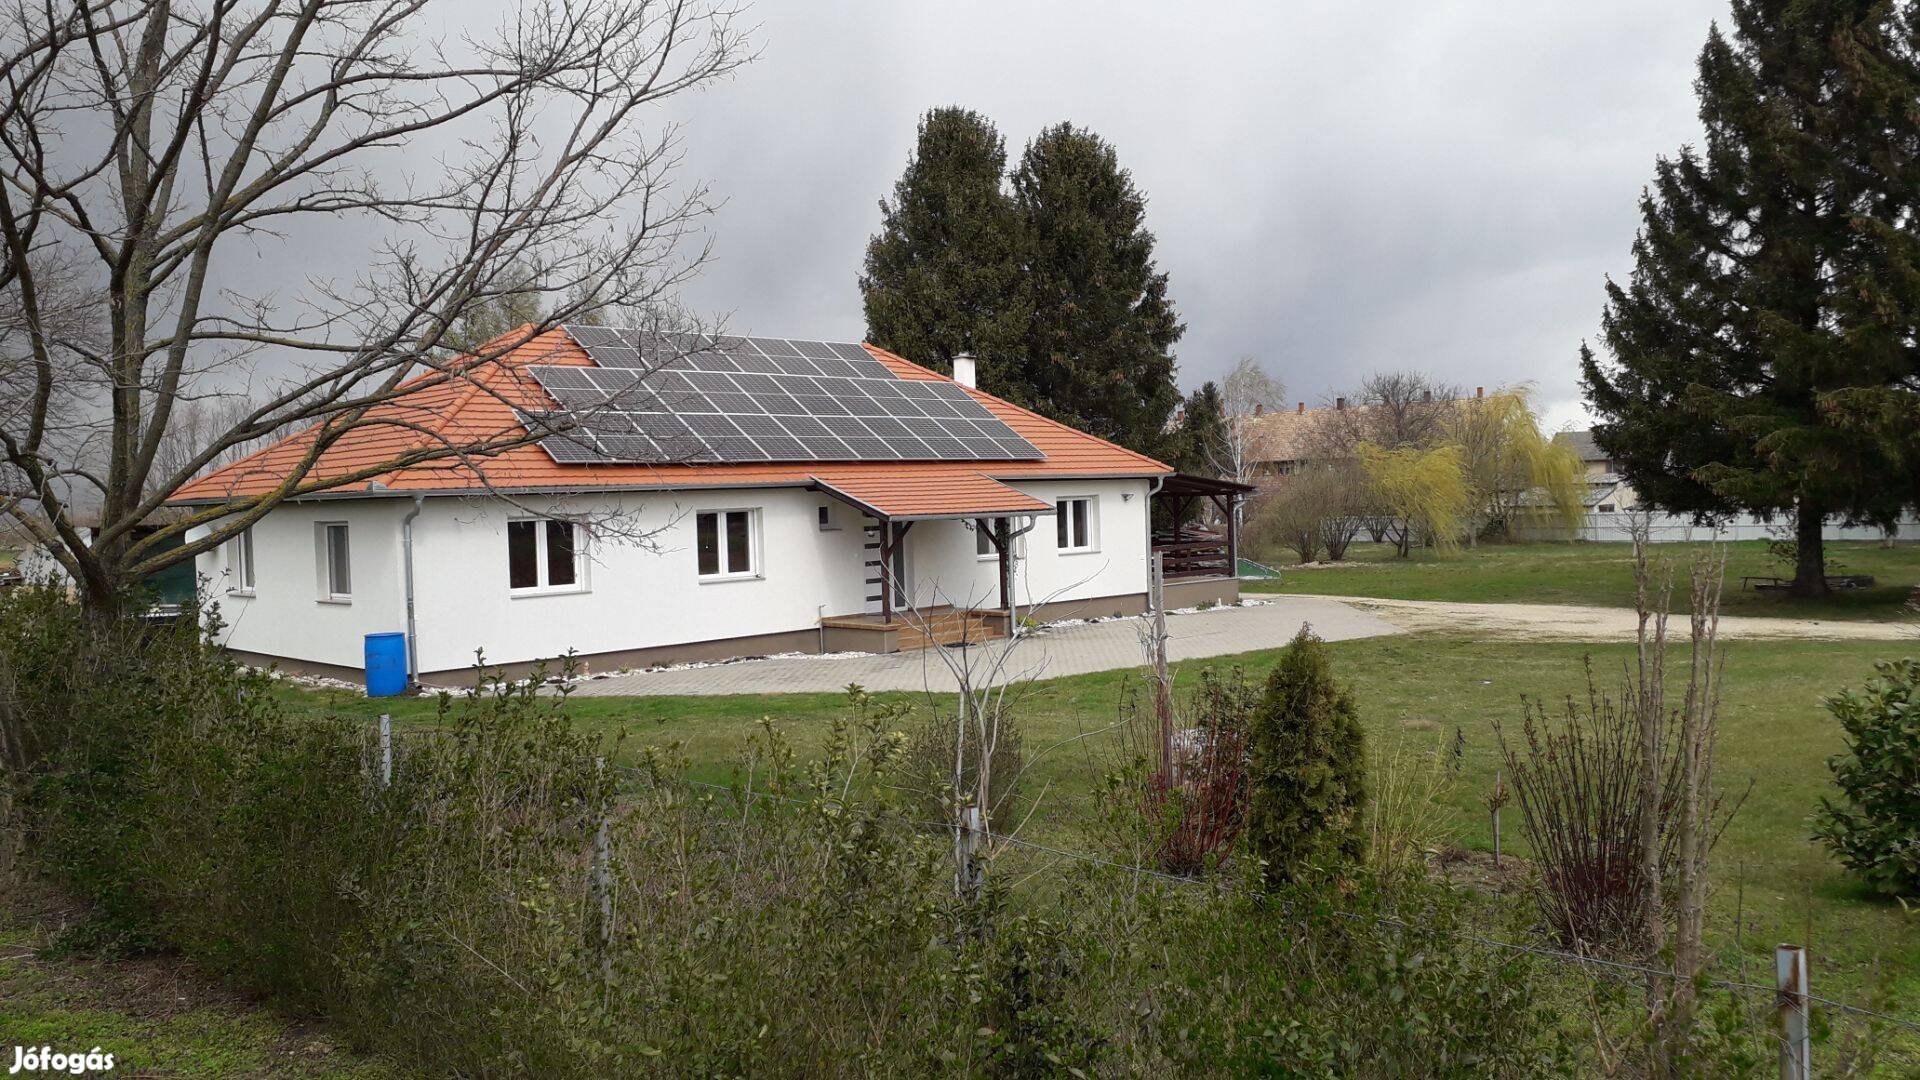 Újépítésű családi ház tulajdonostól eladó Pápa mellet(14km)Ugod